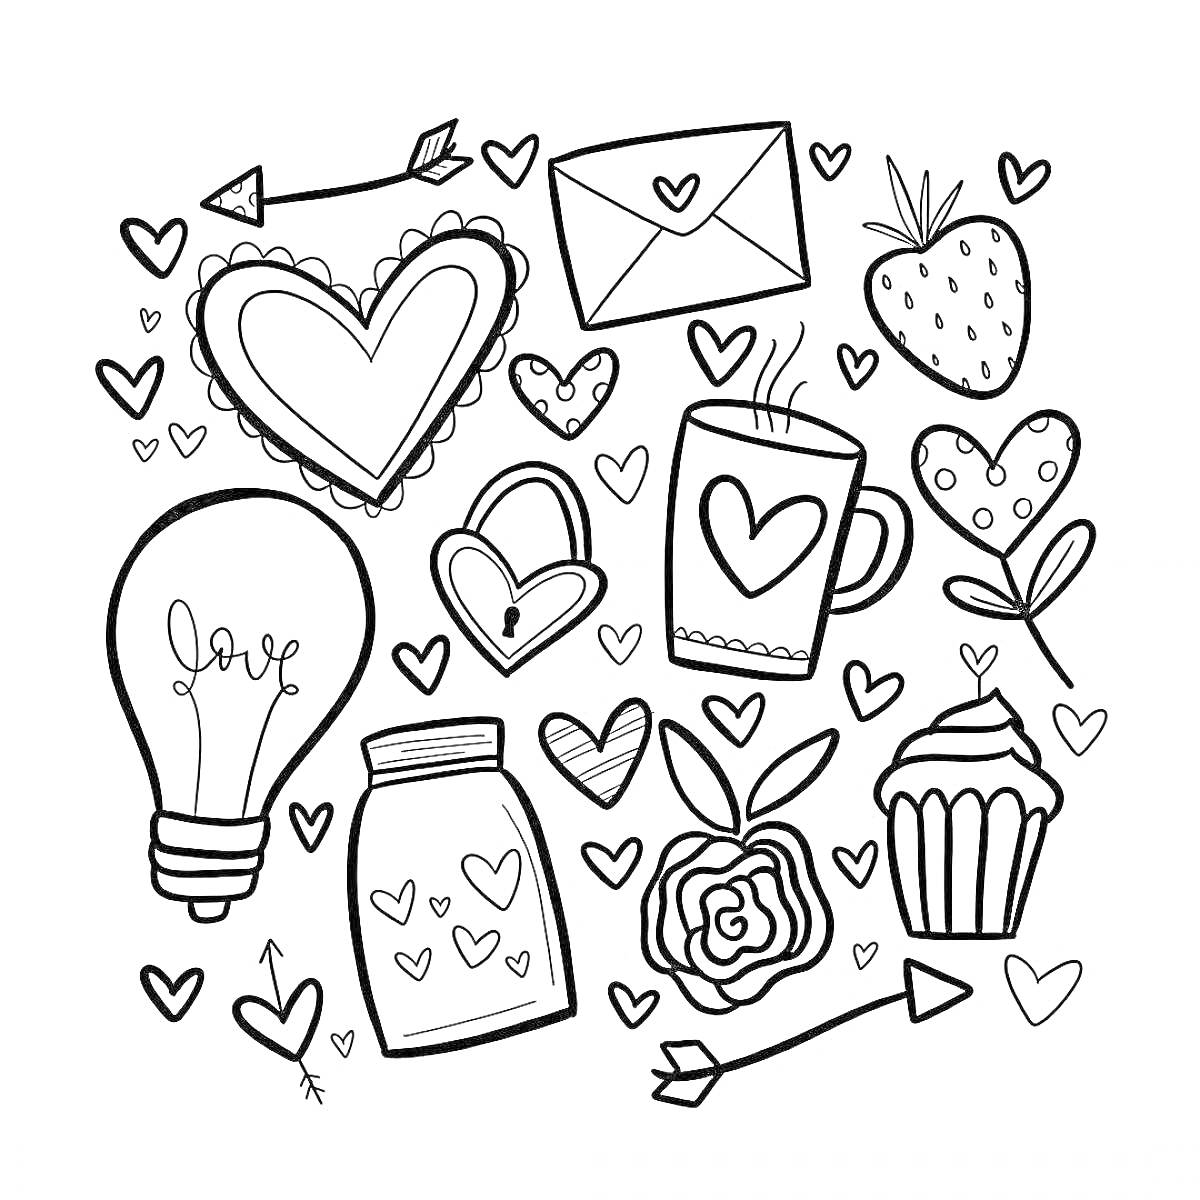 Коллекция мини-наклеек: лампочка, сердце с наконечником от стрелы, открытка, клубника, кружка с сердцем, обычное сердце,цветок, замок с ключом, кекс, банка с сердечками, стрела, листочек, маленькие сердечки